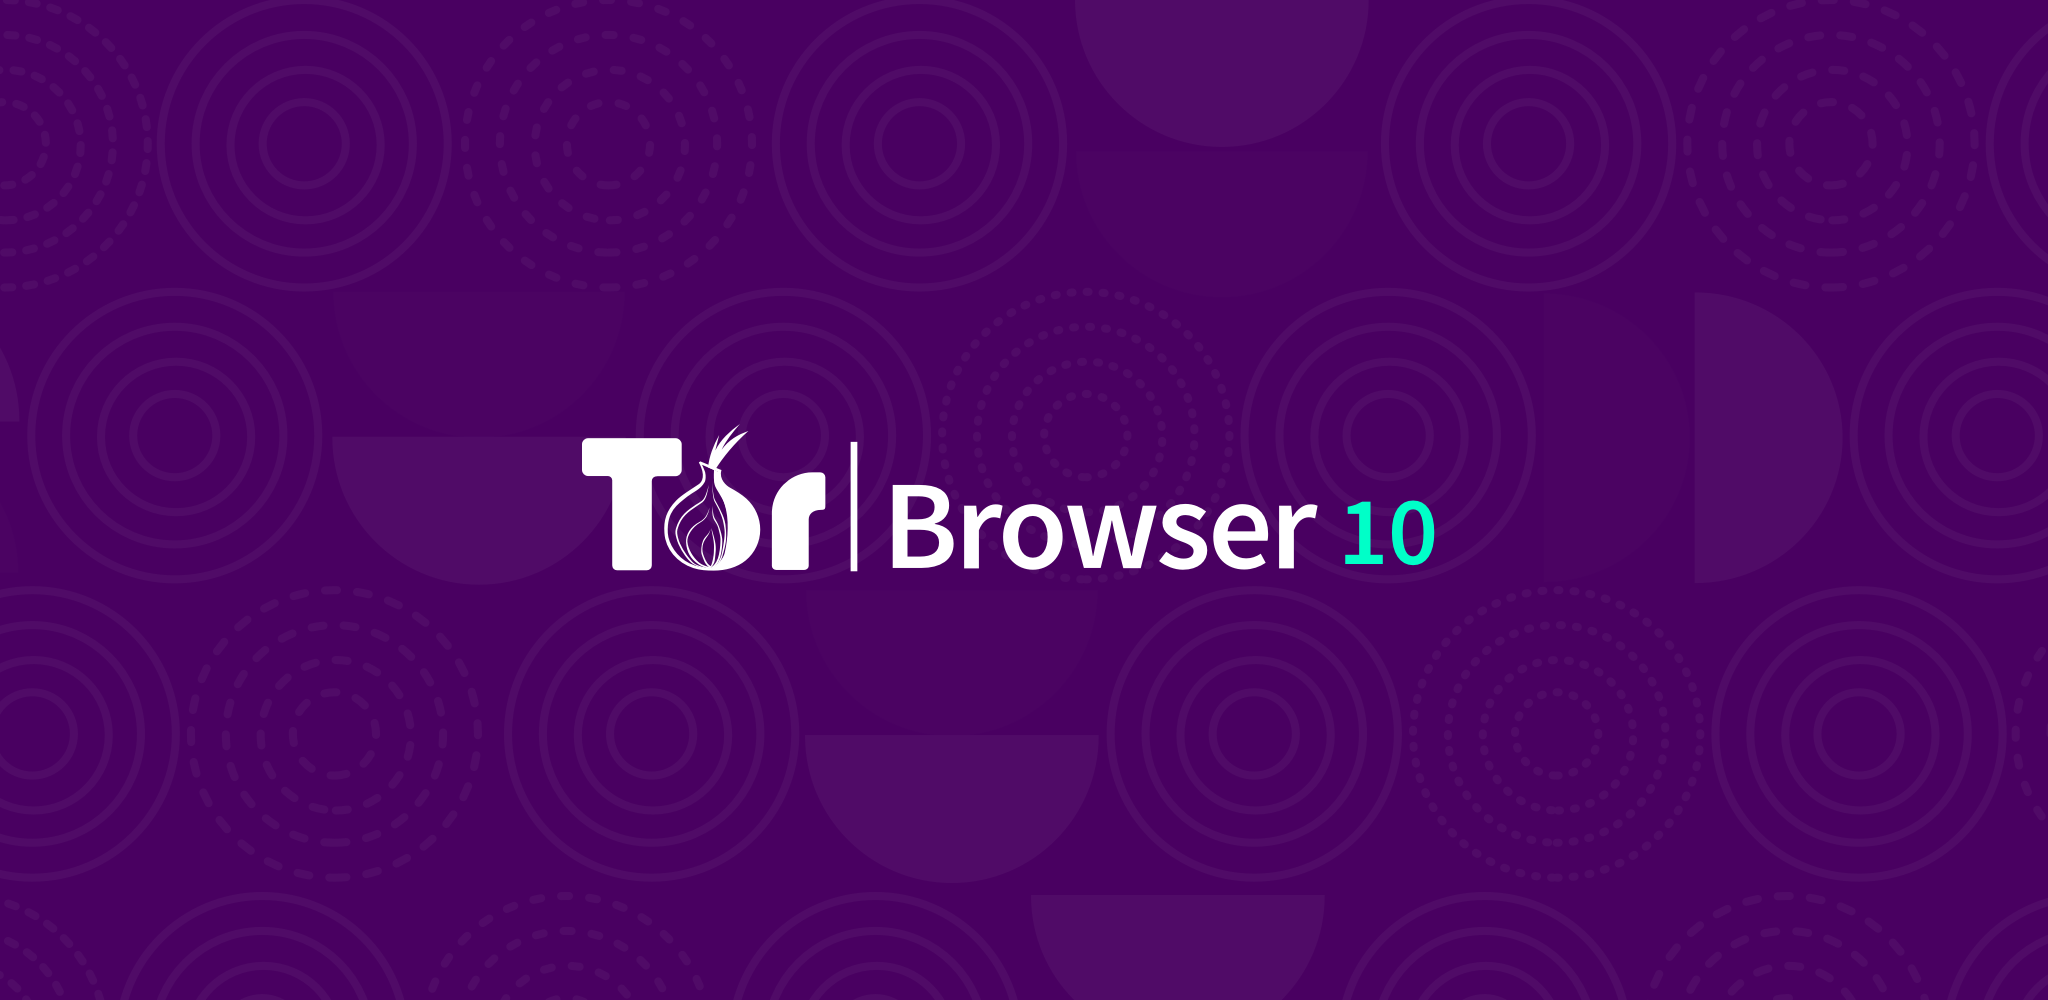 tor browser 4 скачать